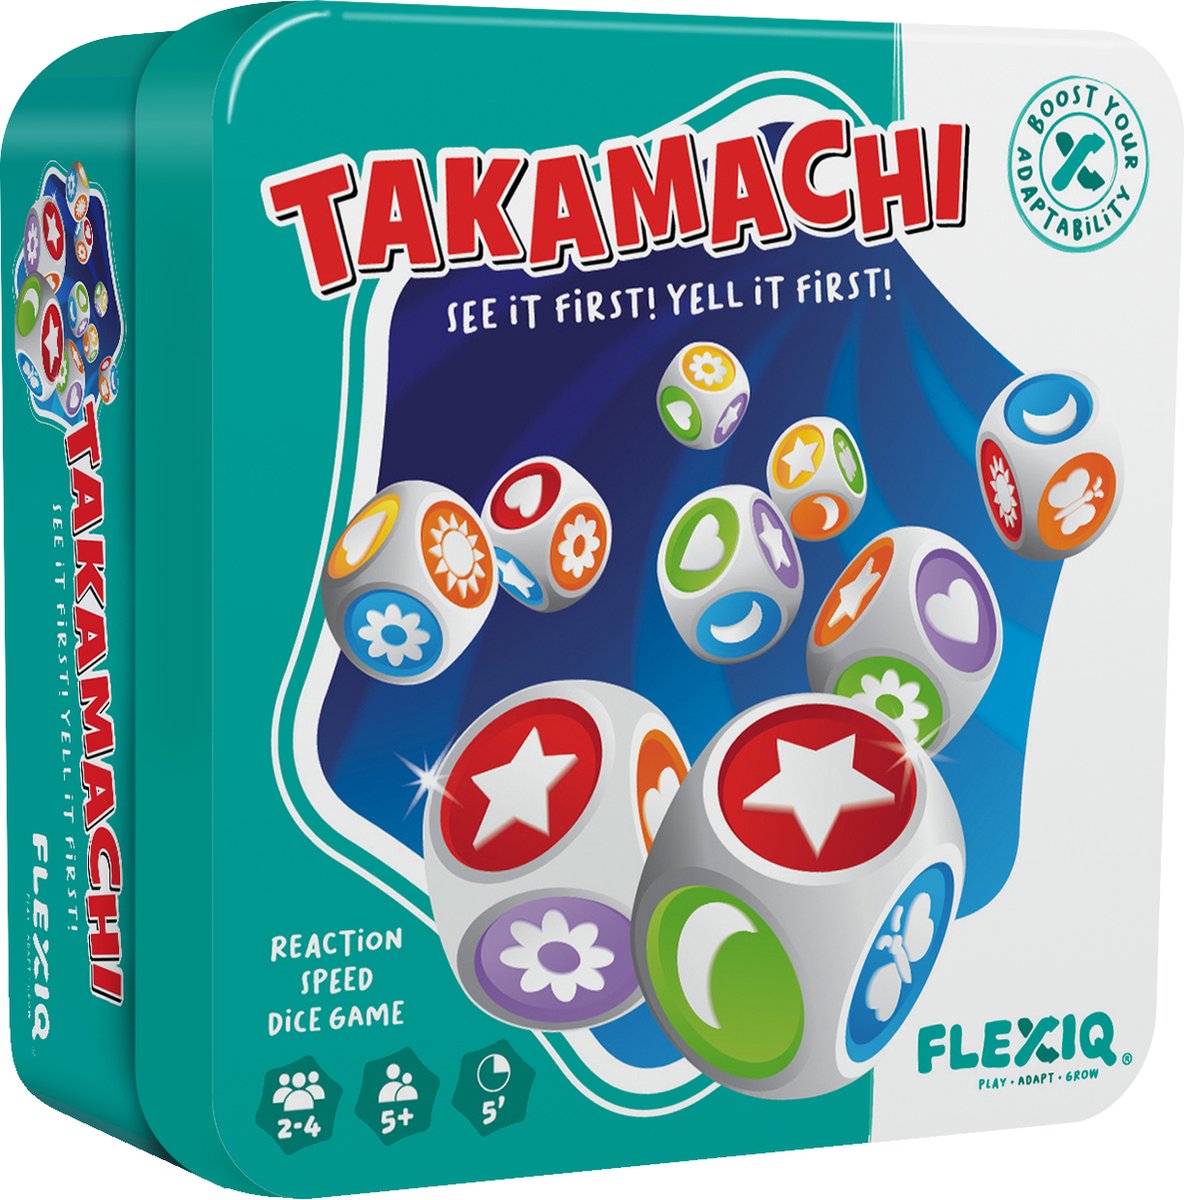 Takamchi - Bordspel